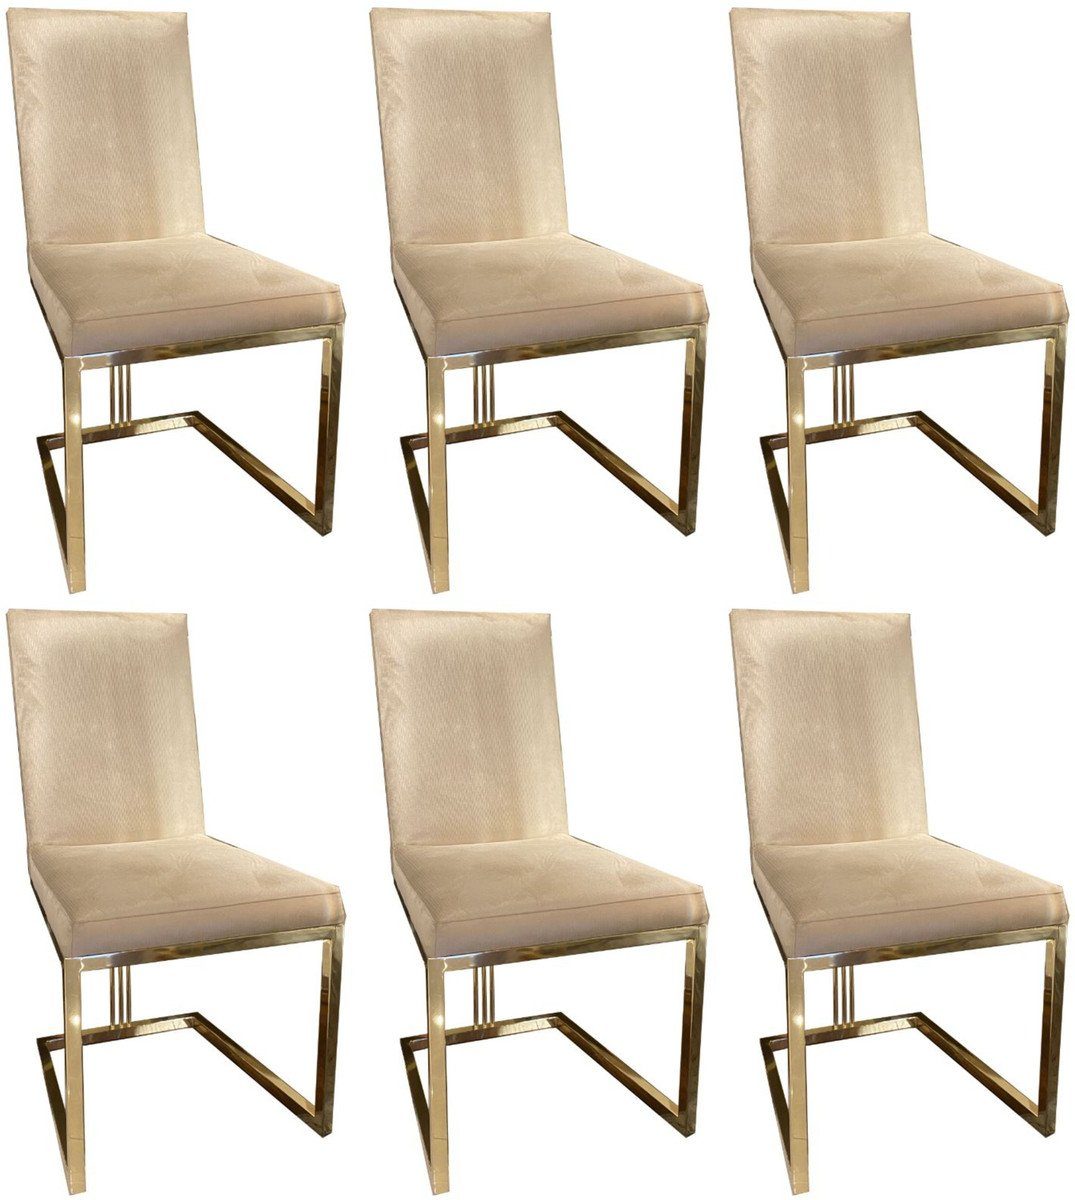 Casa Padrino Esszimmerstuhl Luxus Esszimmer Stuhl Set Grau / Gold 50 x 60 x H. 100 cm - Edles Küchen Stühle 6er Set - Luxus Esszimmer Möbel